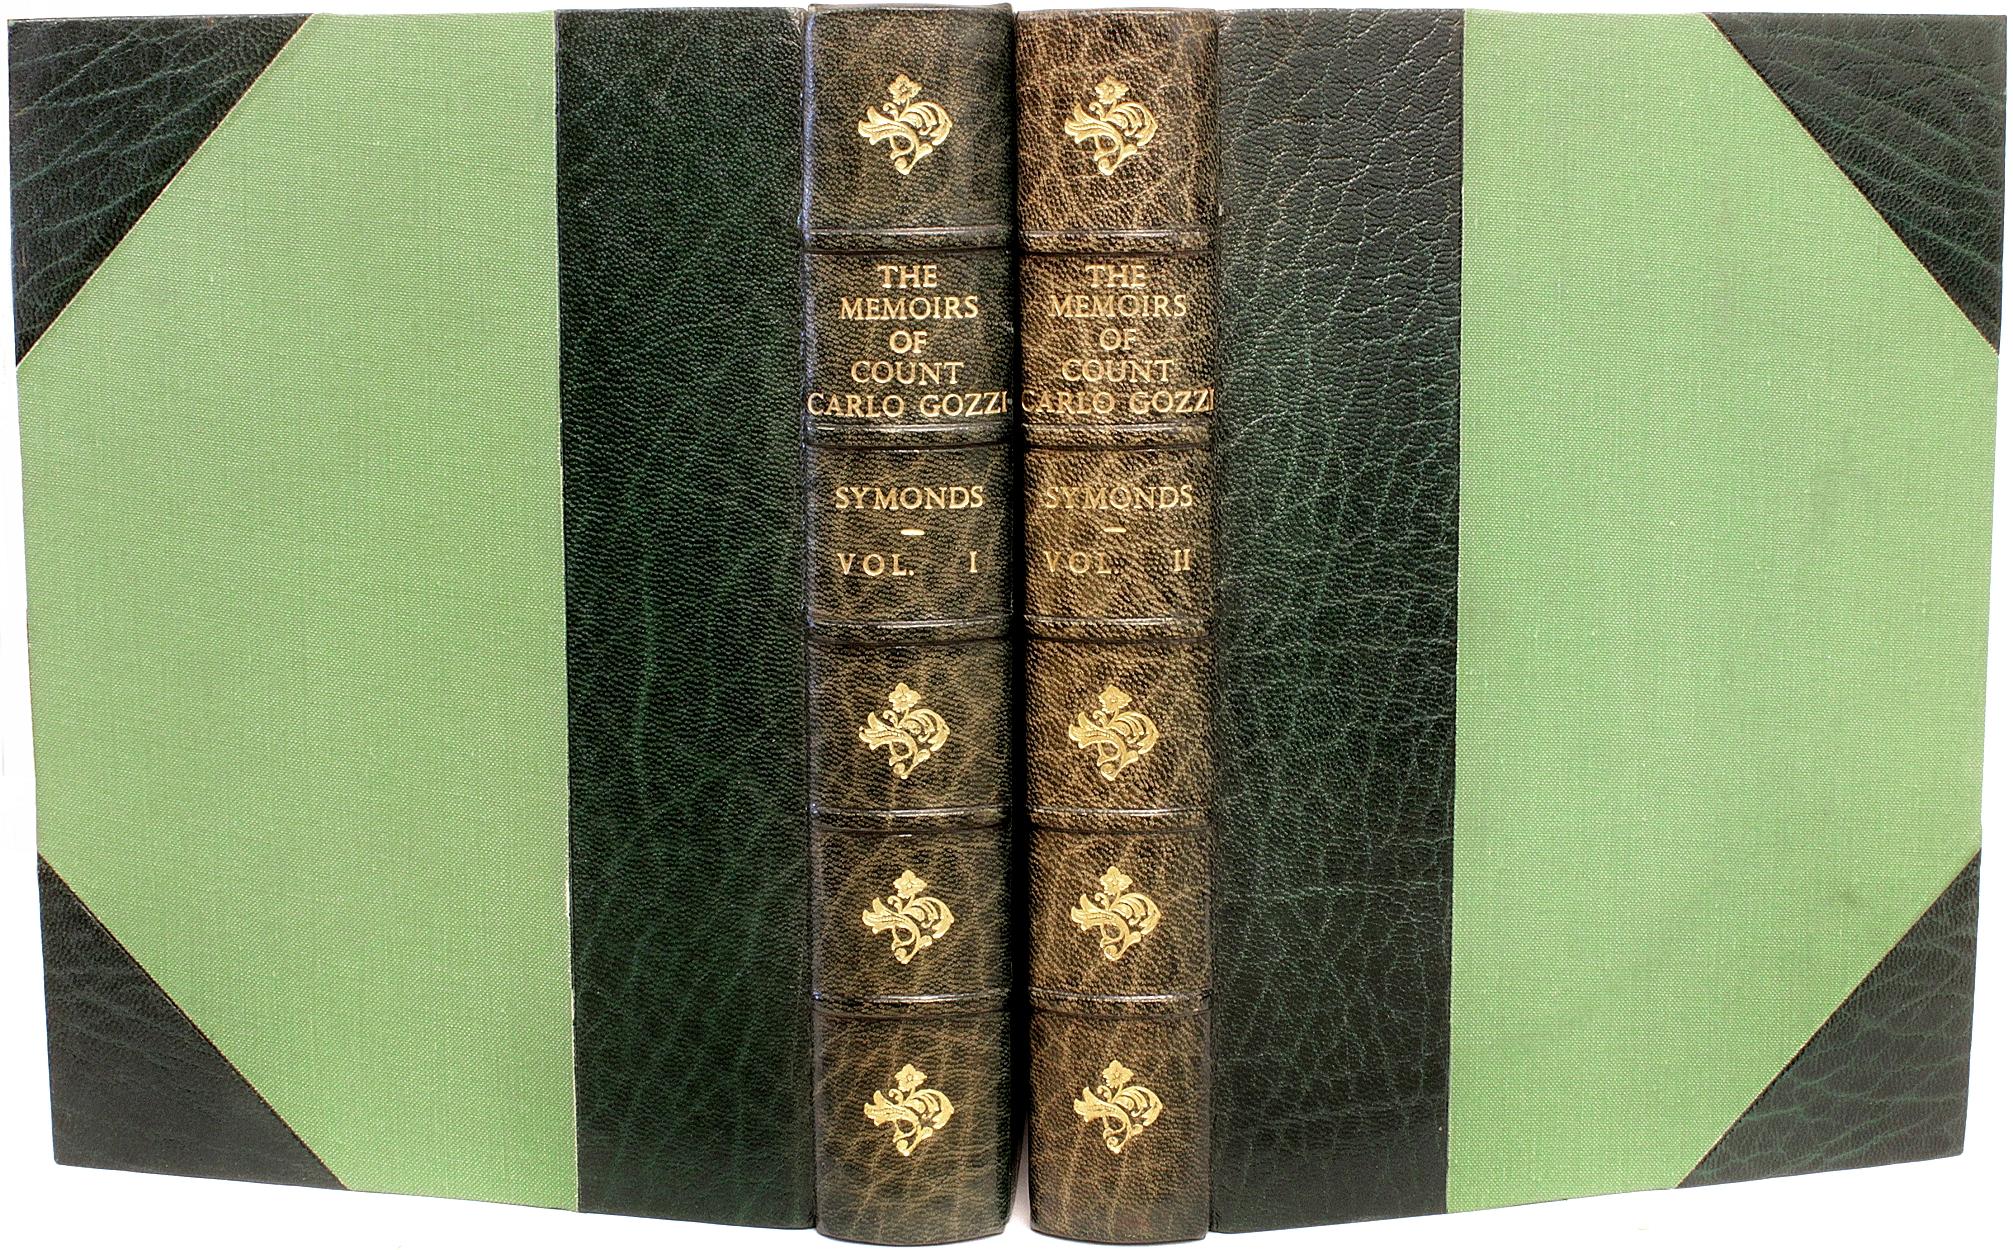 AUTHOR: SYMONDS, John Addington. 

TITLE: The Memoirs of Count Carlo Gozzi.

PUBLISHER: London: John C. Nimmo, 1890.

DESCRIPTION: LIMITED EDITION. 2 vols., 9-1/4